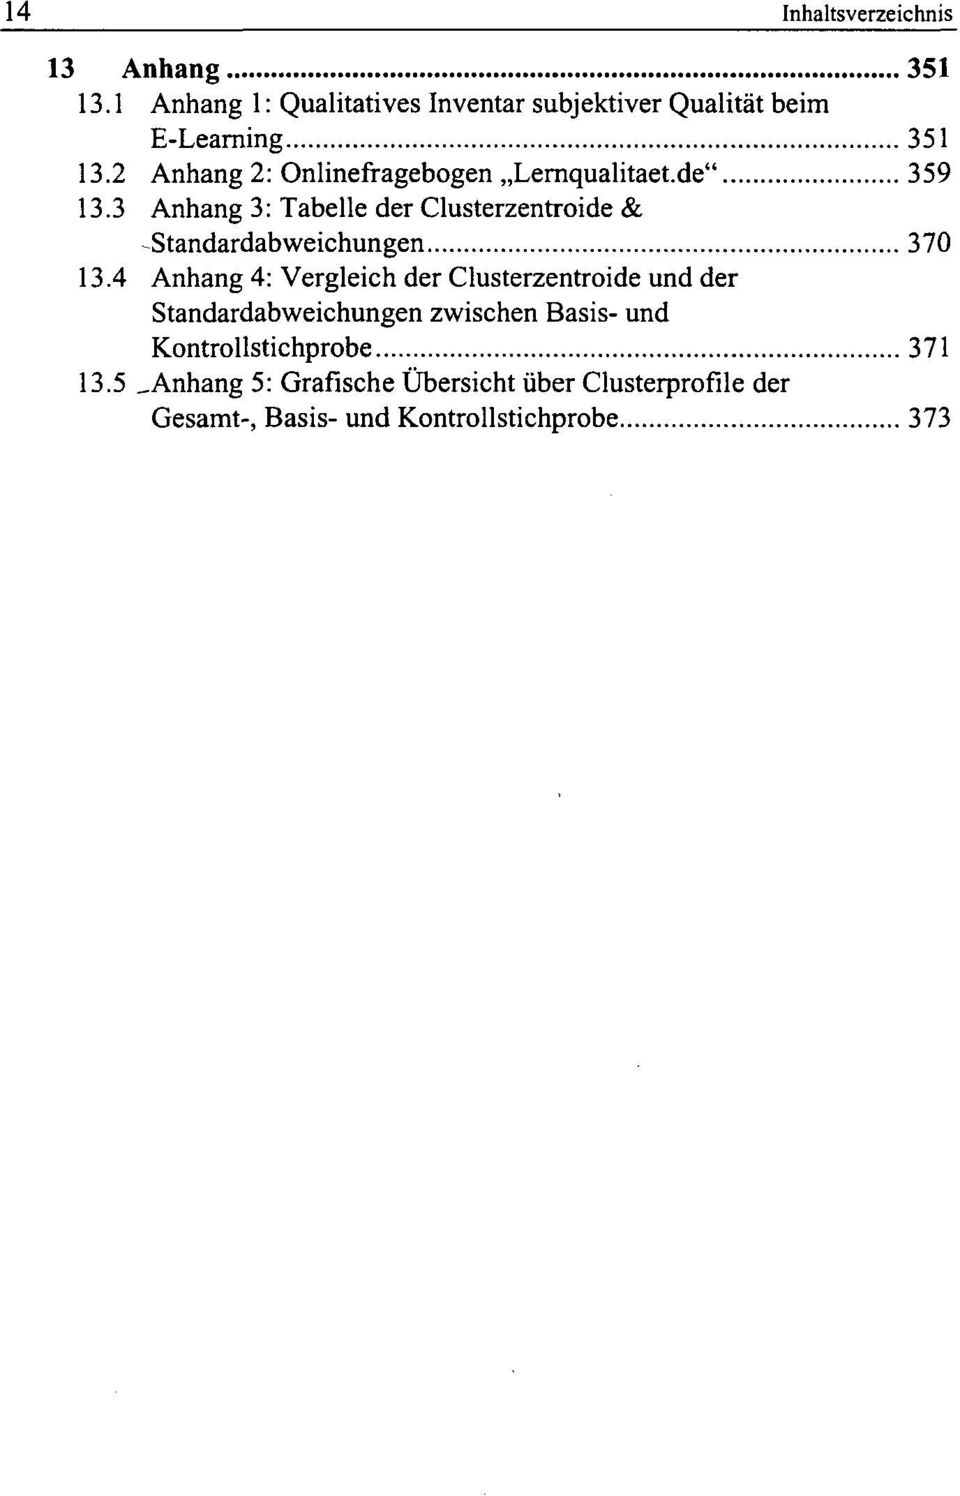 2 Anhang 2: Onlinefragebogen Lernqualitaet.de" 359 13.